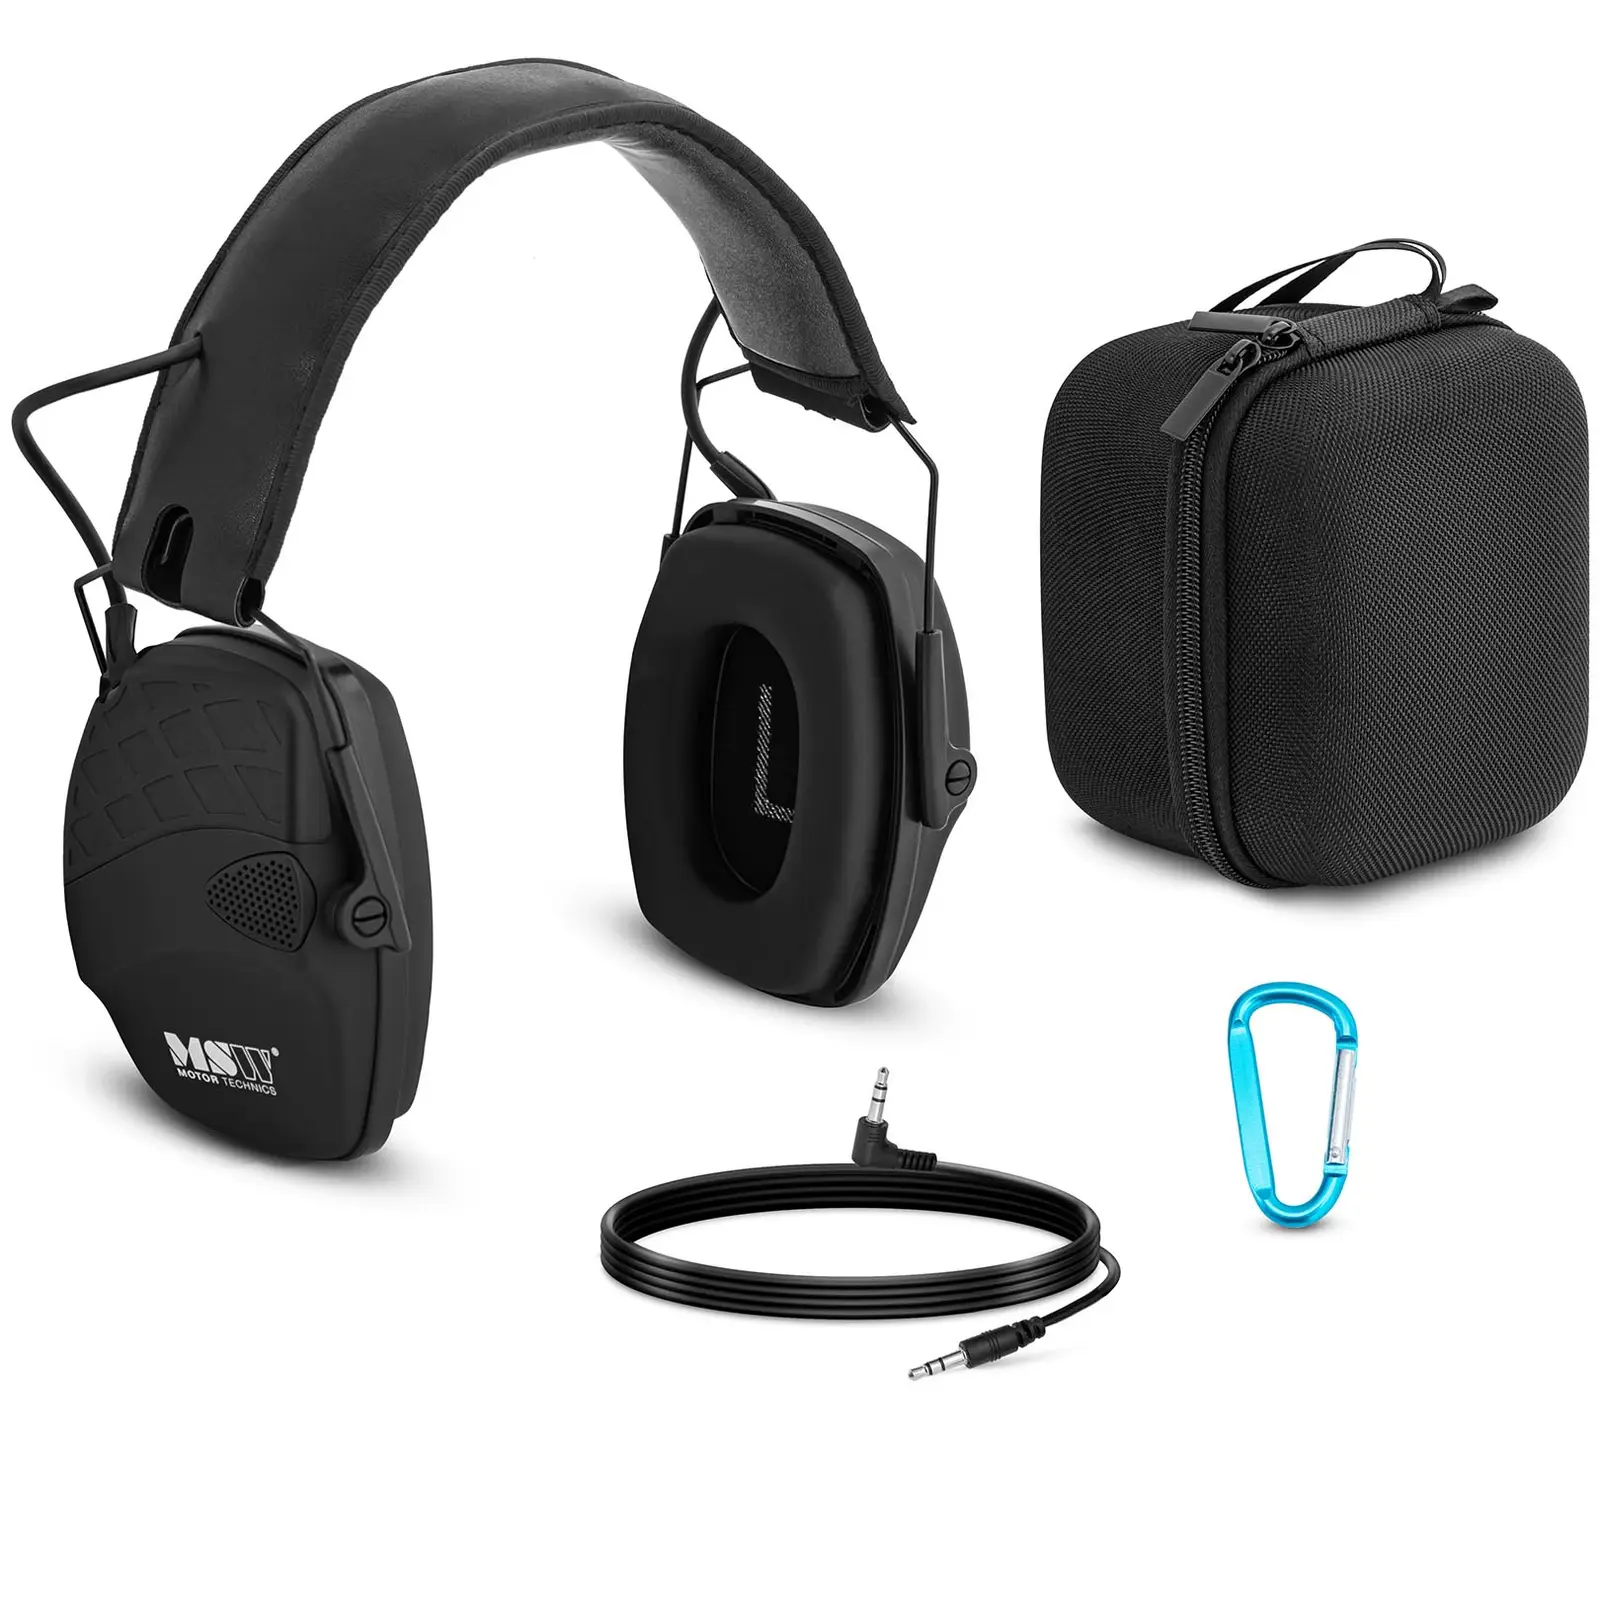 Pracovní sluchátka - dynamická ochrana proti hluku ve venkovním prostředí - černá barva